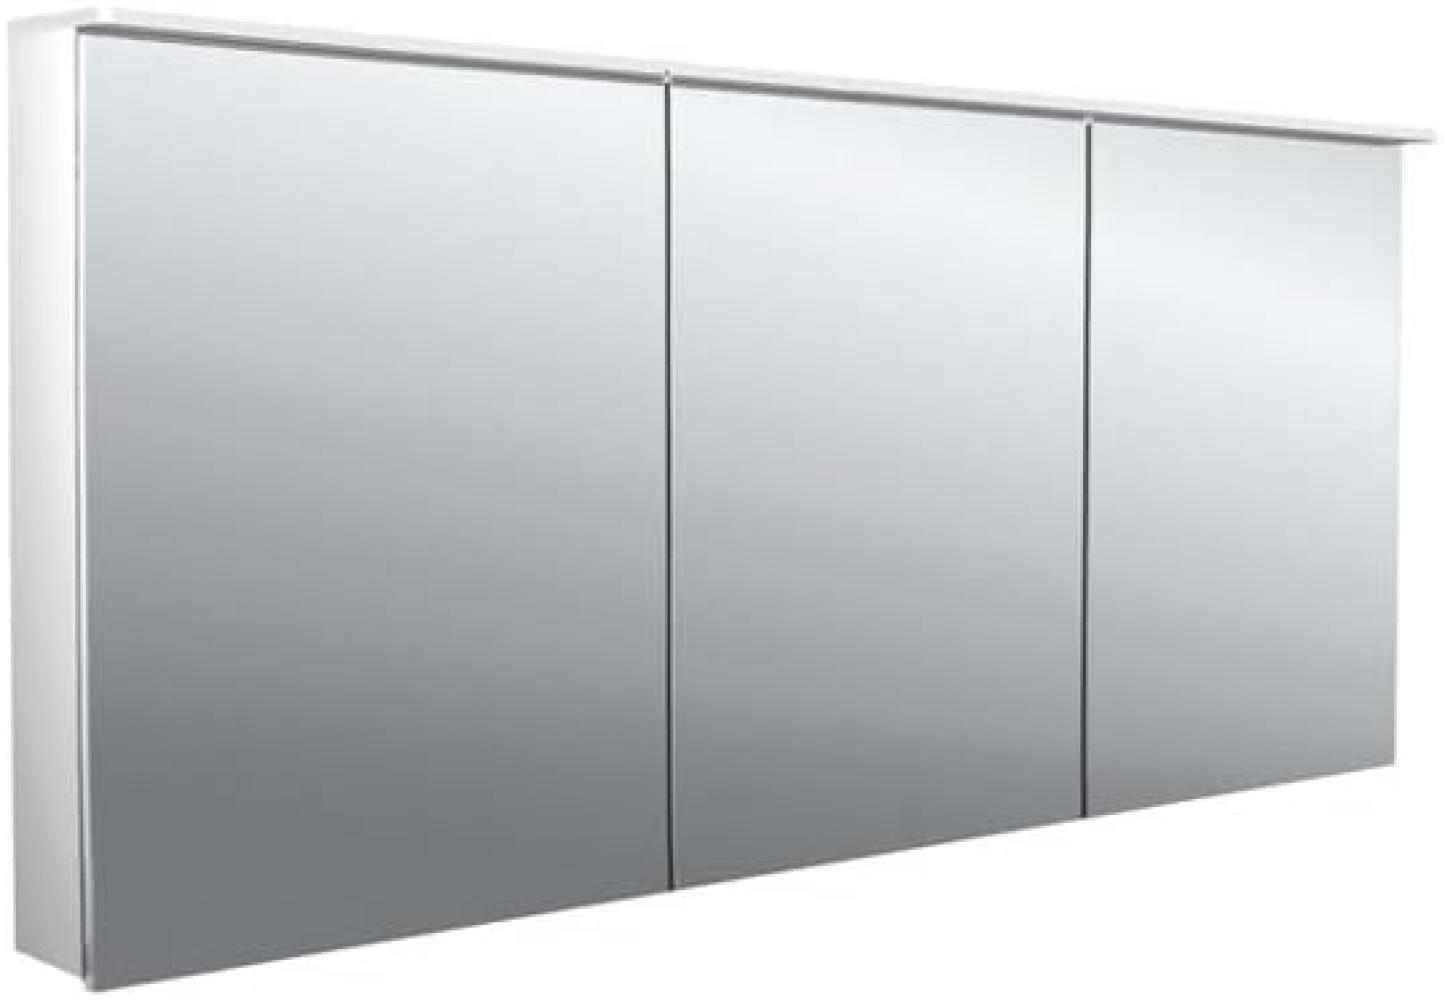 Emco flat 2 Design LED Lichtspiegelschrank mit Aufsatzleuchte, 3 Türen, 1600x711x113mm, 979706407 - 979706407 Bild 1